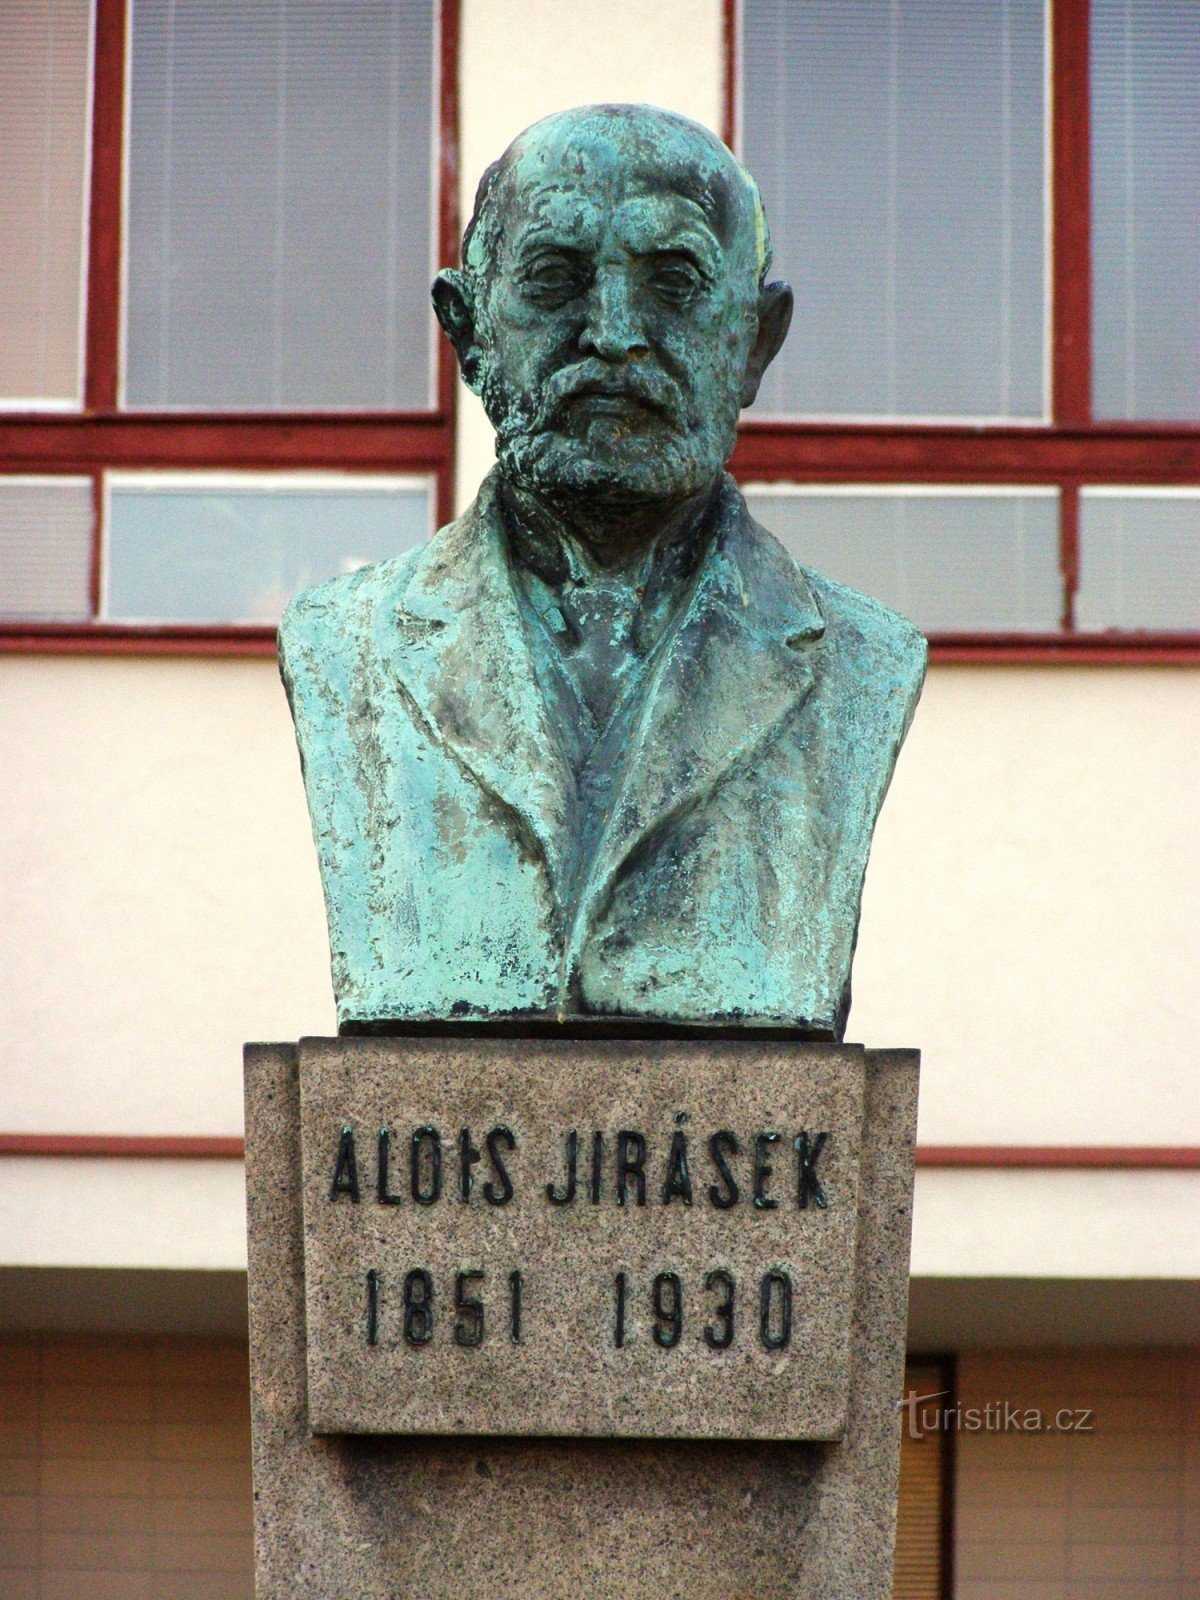 Hradec Králové - Plaza Jiráskov